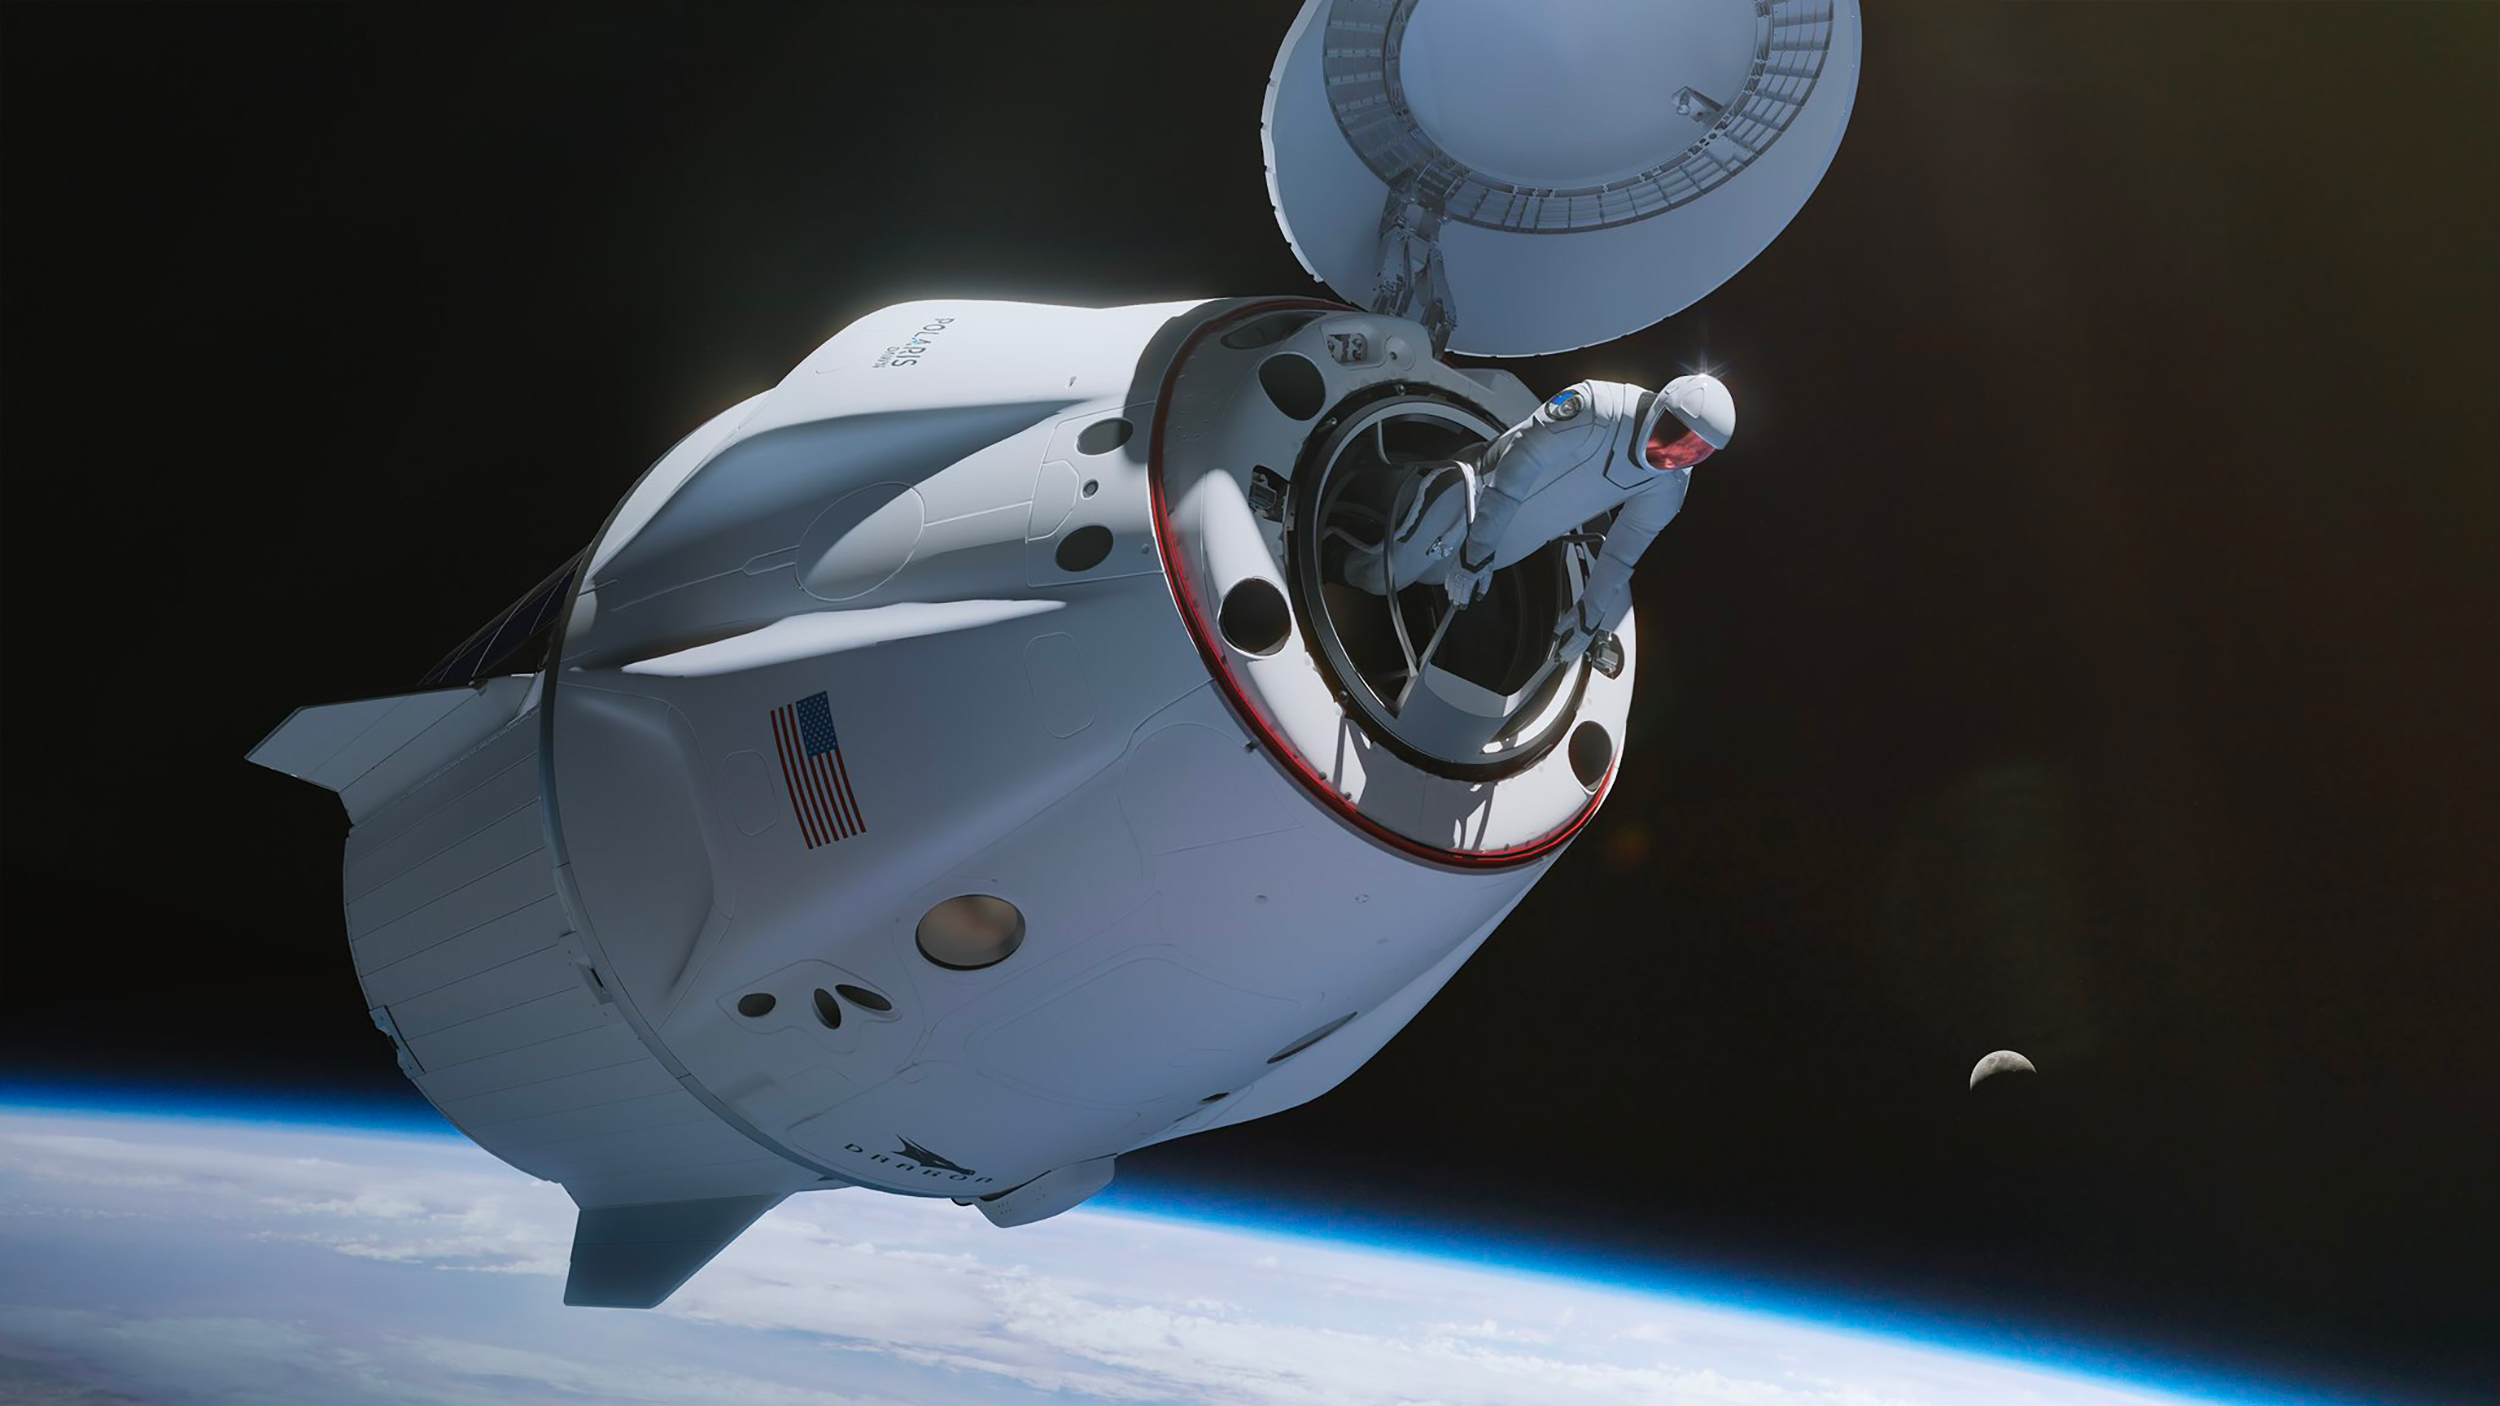 Lors de la mission Polaris Dawn, prévue dans quelques mois, Jared Isaacman réalisera une sortie extravéhiculaire. La première pour un civil. © Polaris Dawn, SpaceX